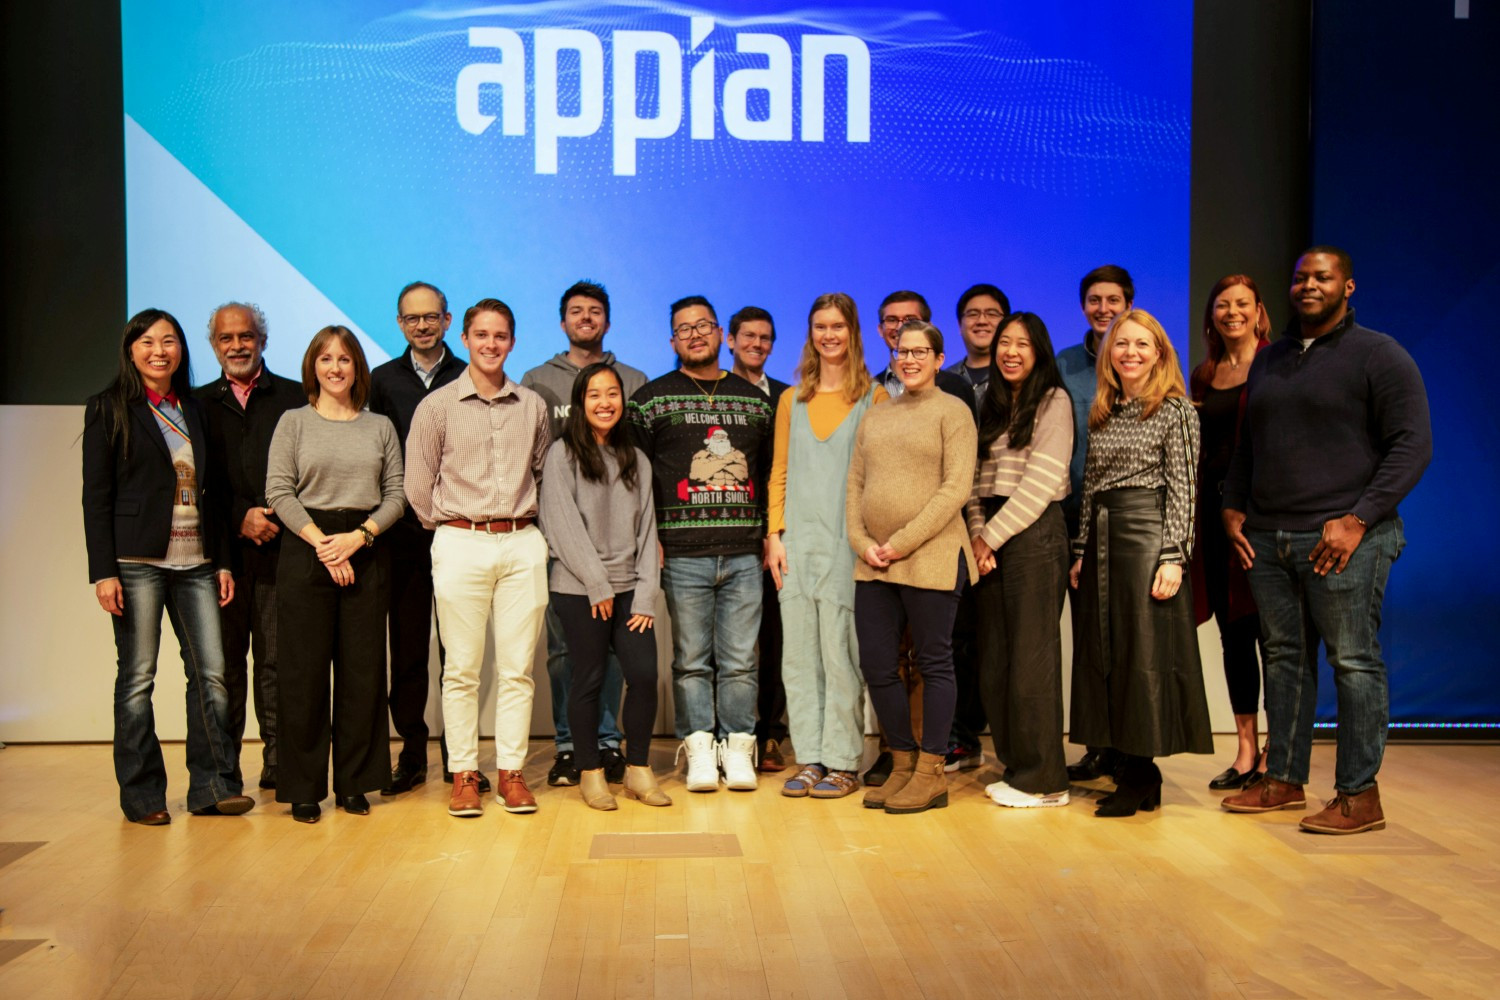 AppianPride at HQ